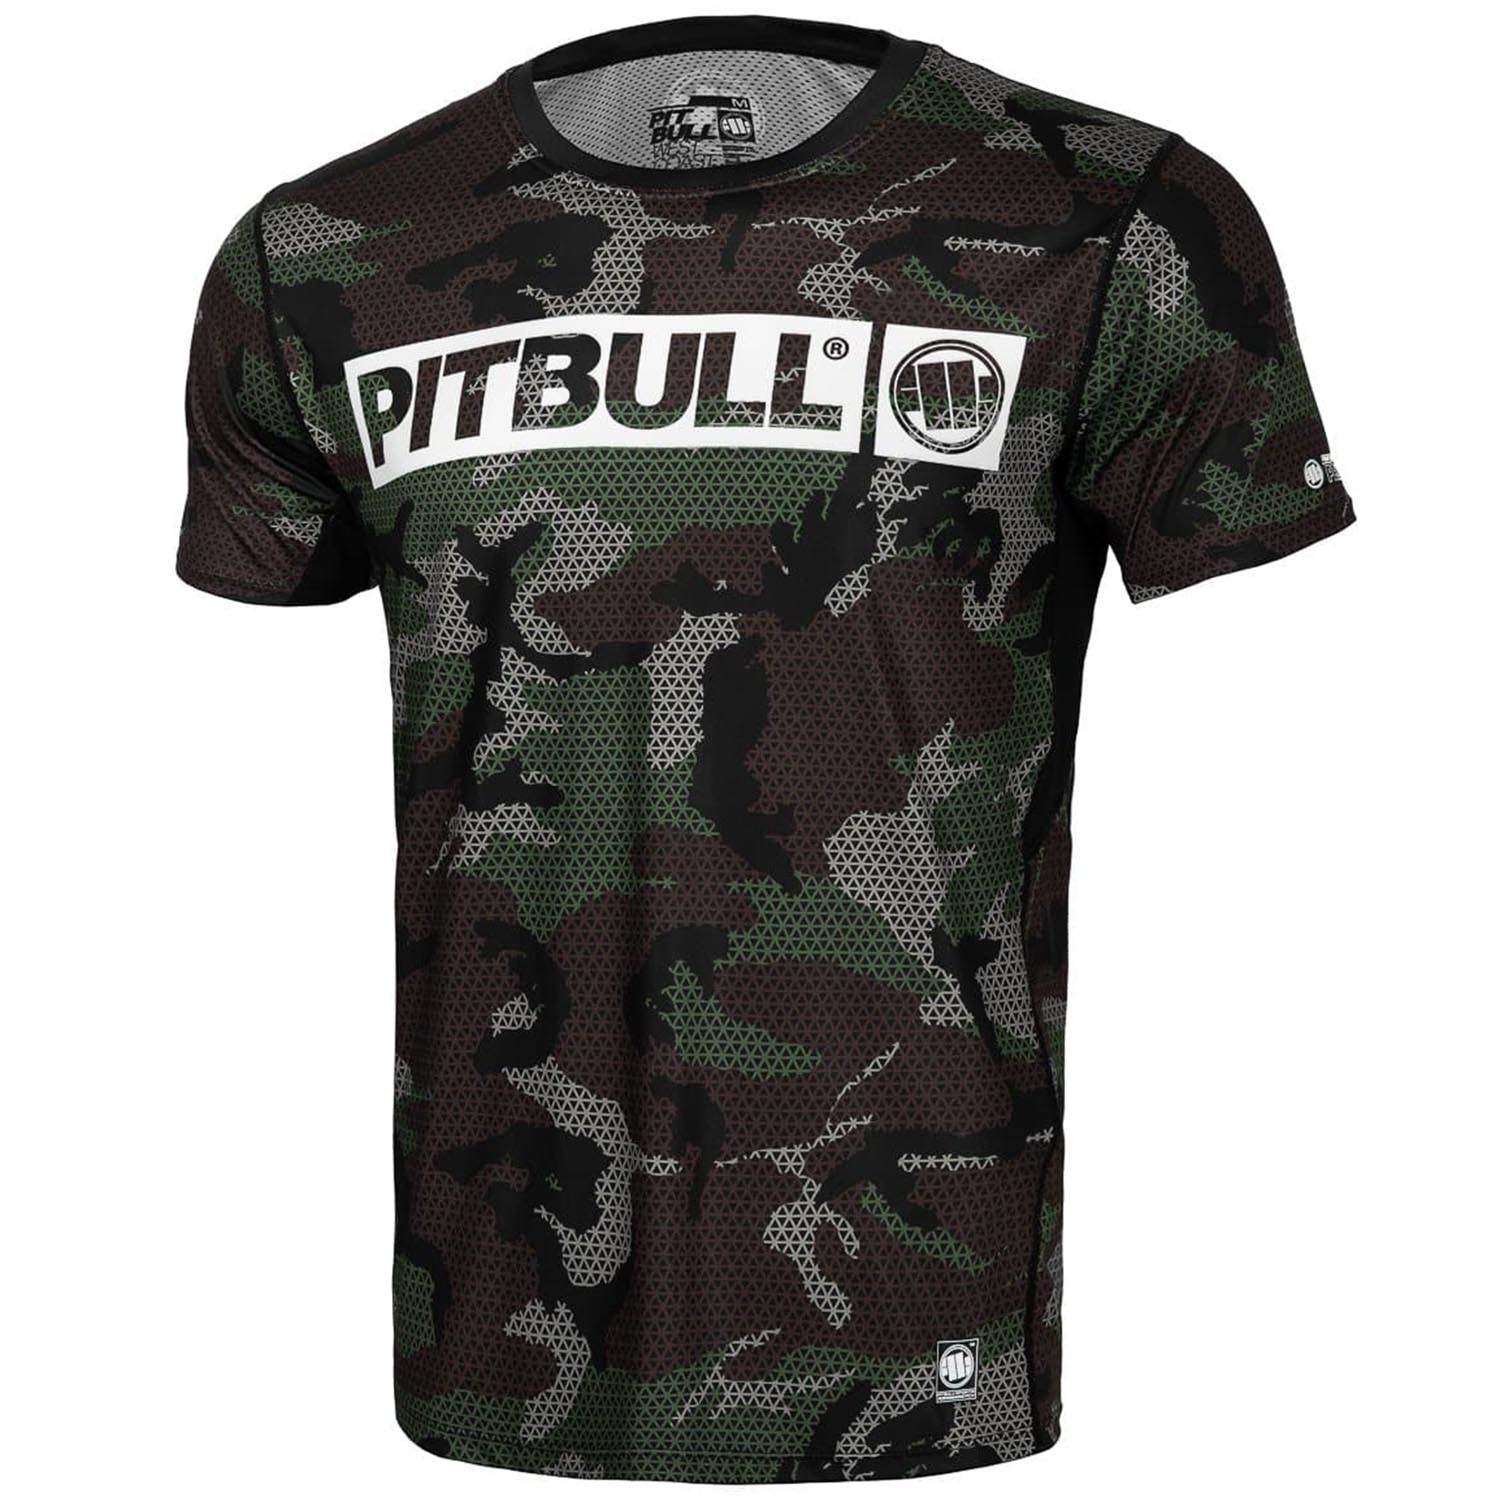 Pit Bull West Coast Fitness Shirt, Mesh Net Hilltop, camo-grün, XXXL